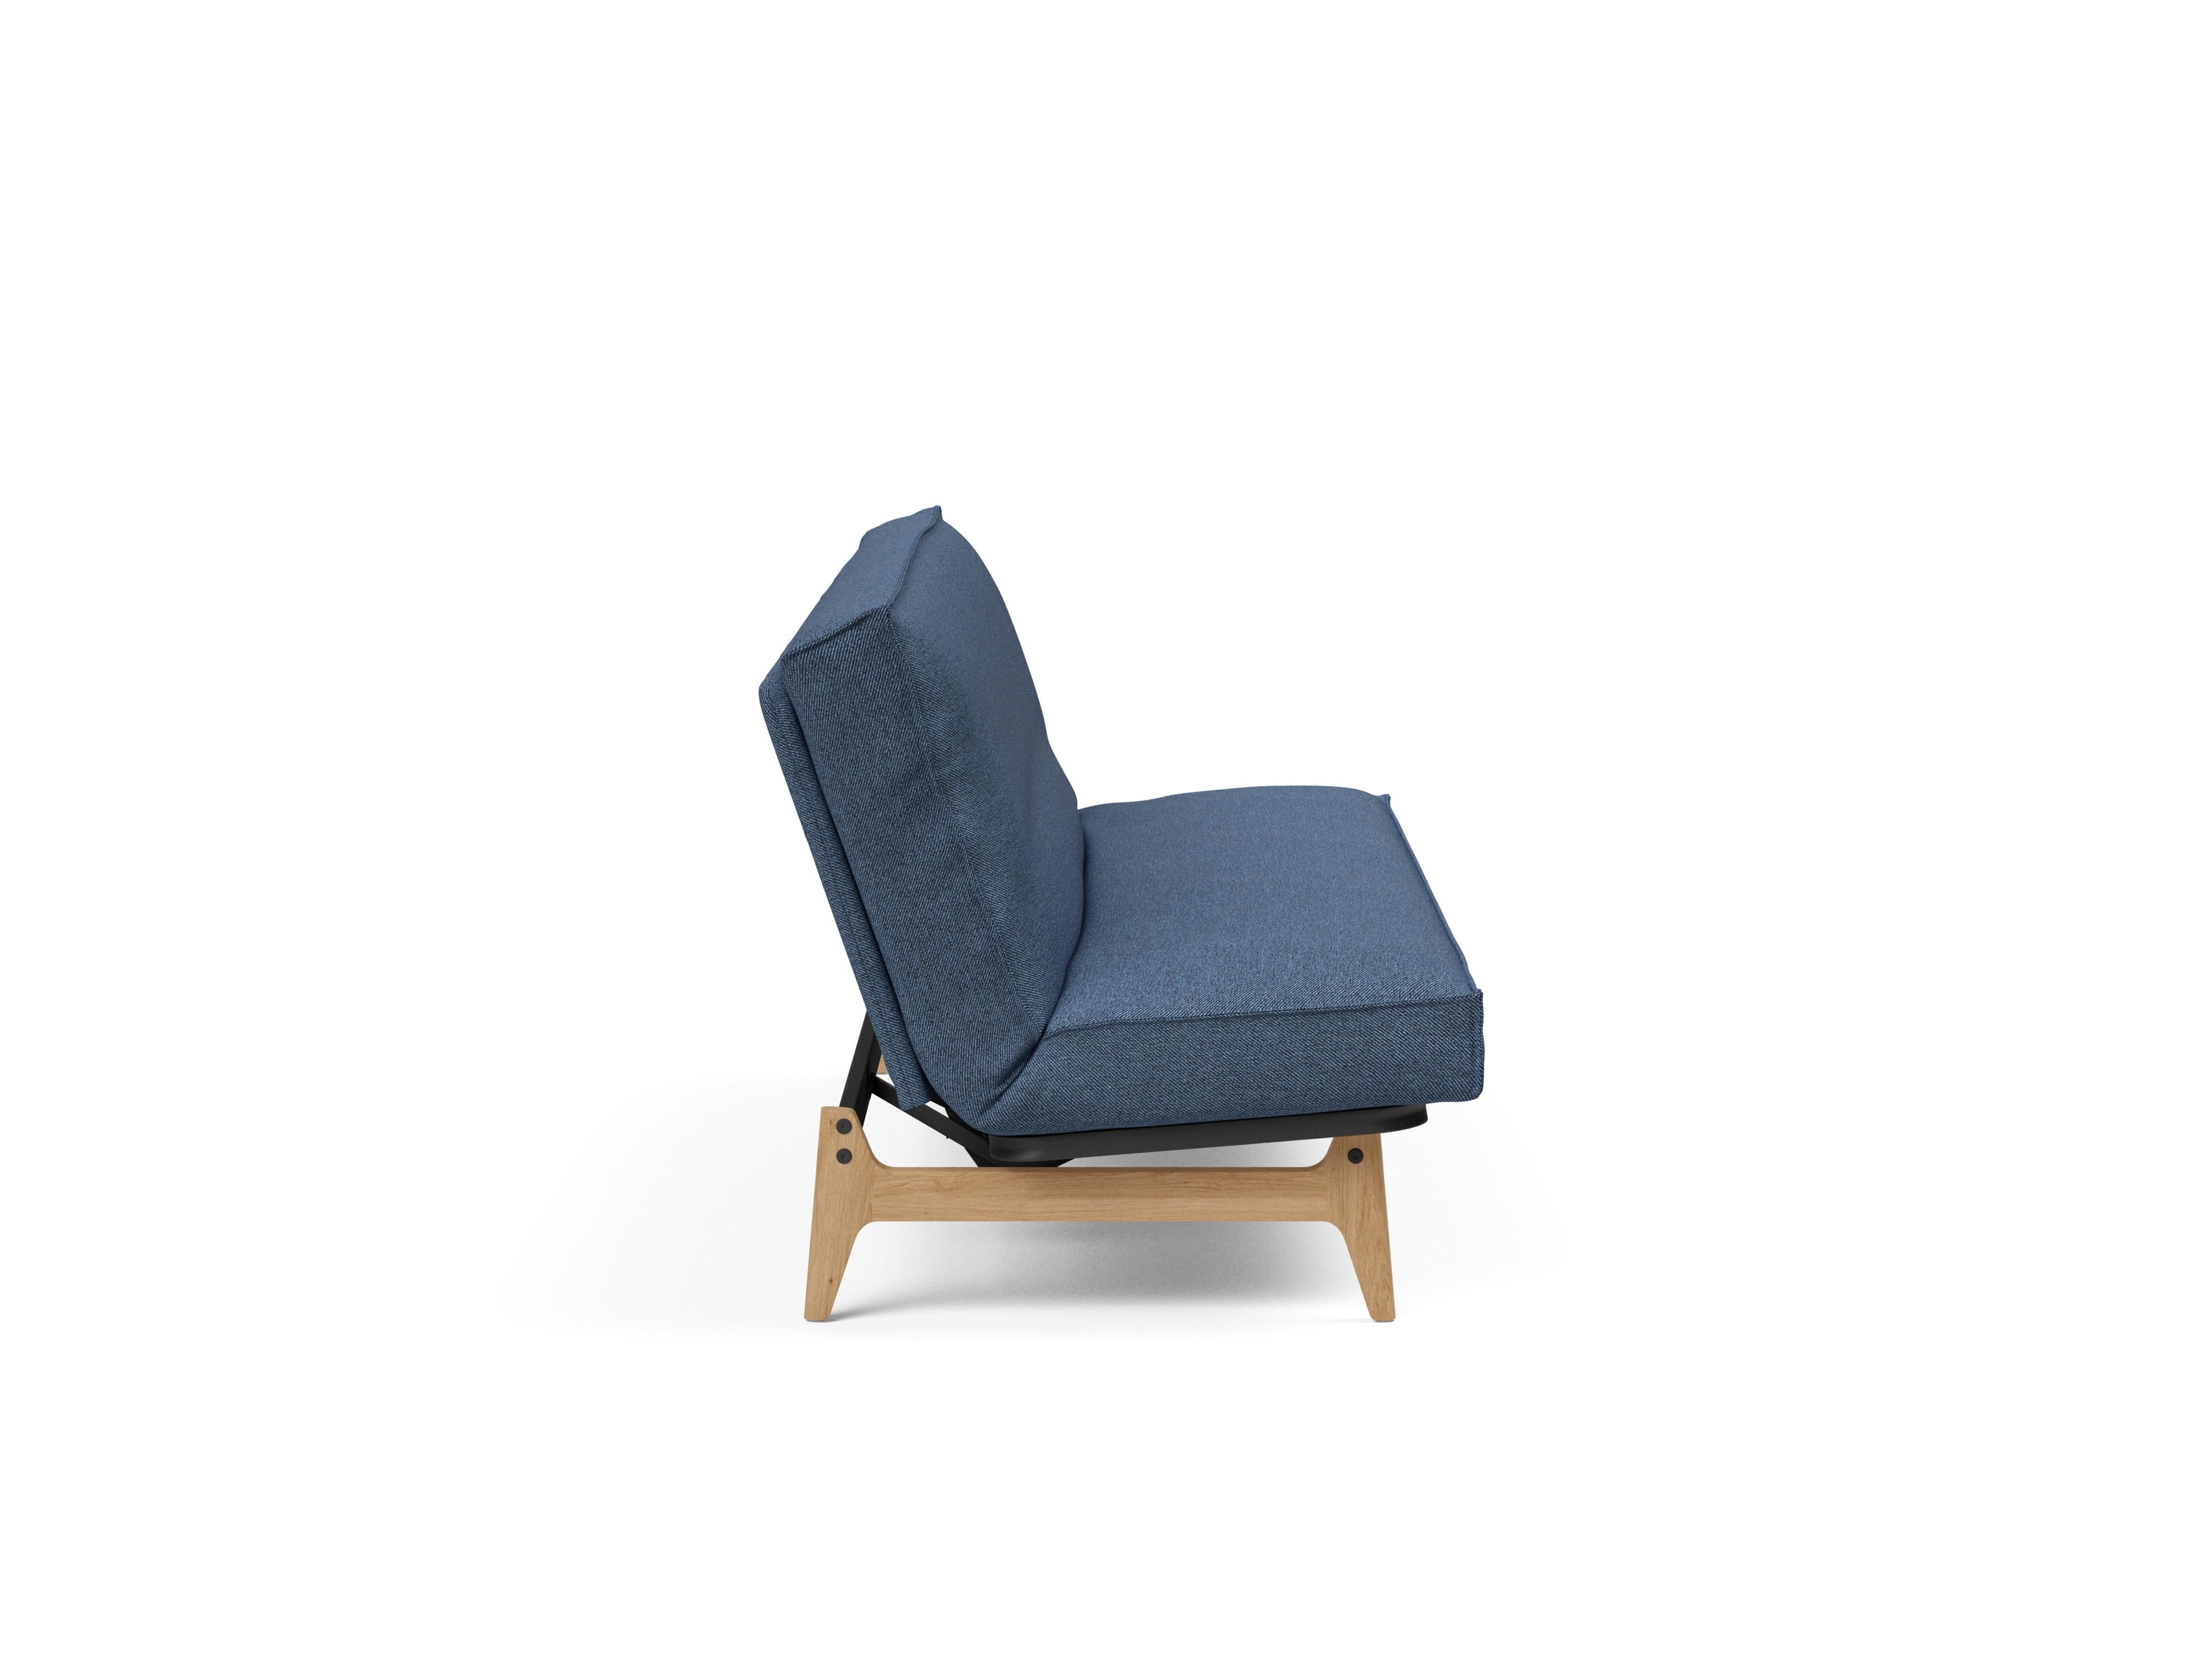 Aslak 120 Bettsofa Sharp Plus Cover in Blau 302 präsentiert im Onlineshop von KAQTU Design AG. Bettsofa ist von Innovation Living